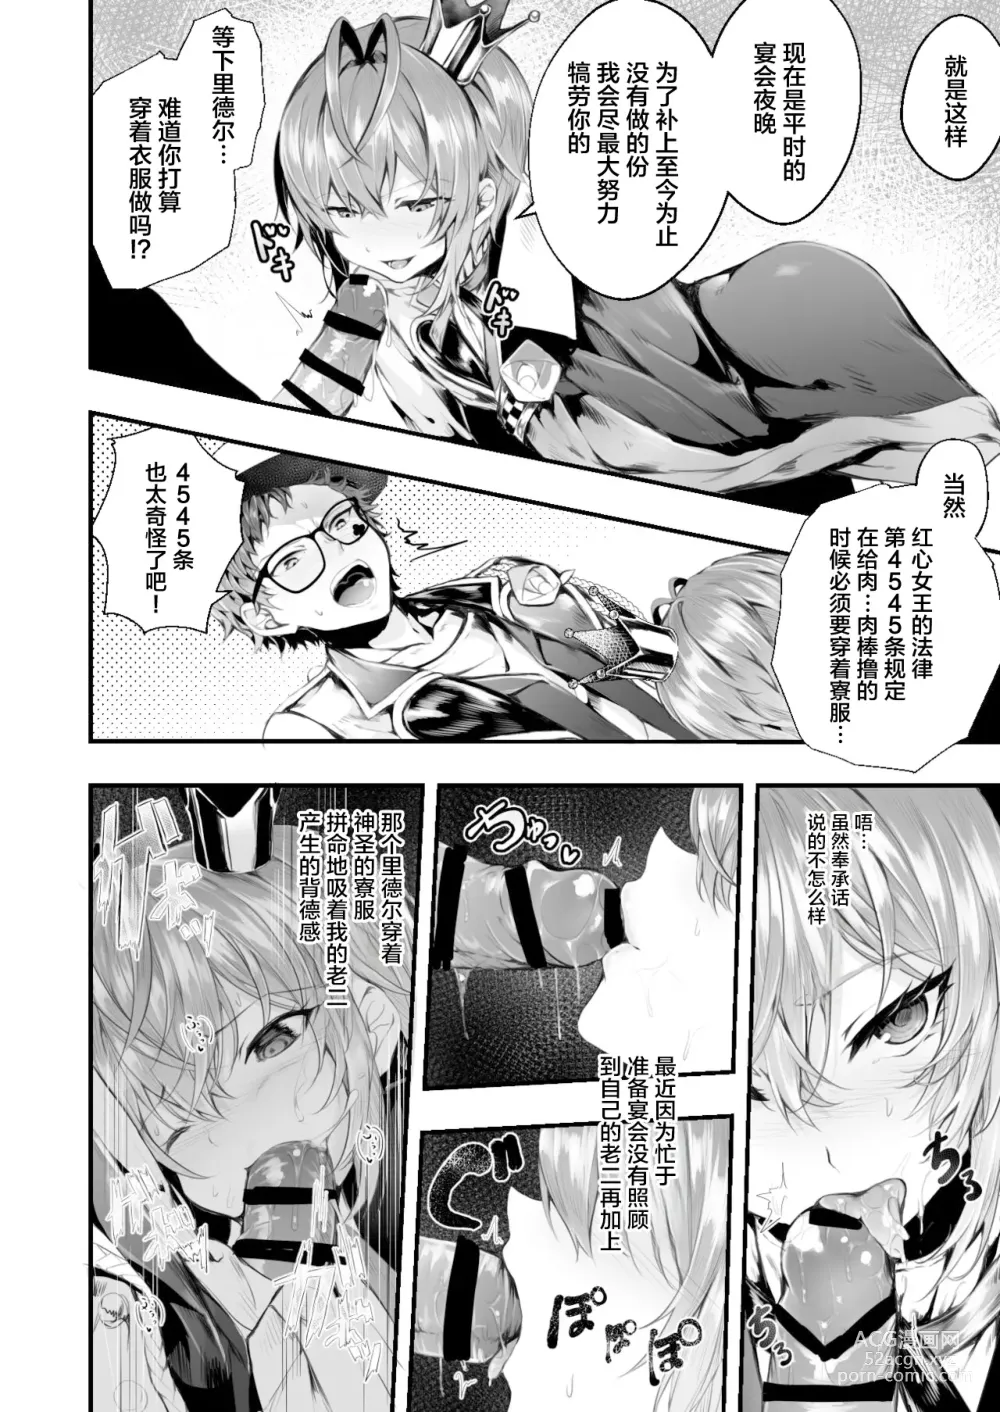 Page 5 of doujinshi Heartslabyul no Ryouchou Tarumono